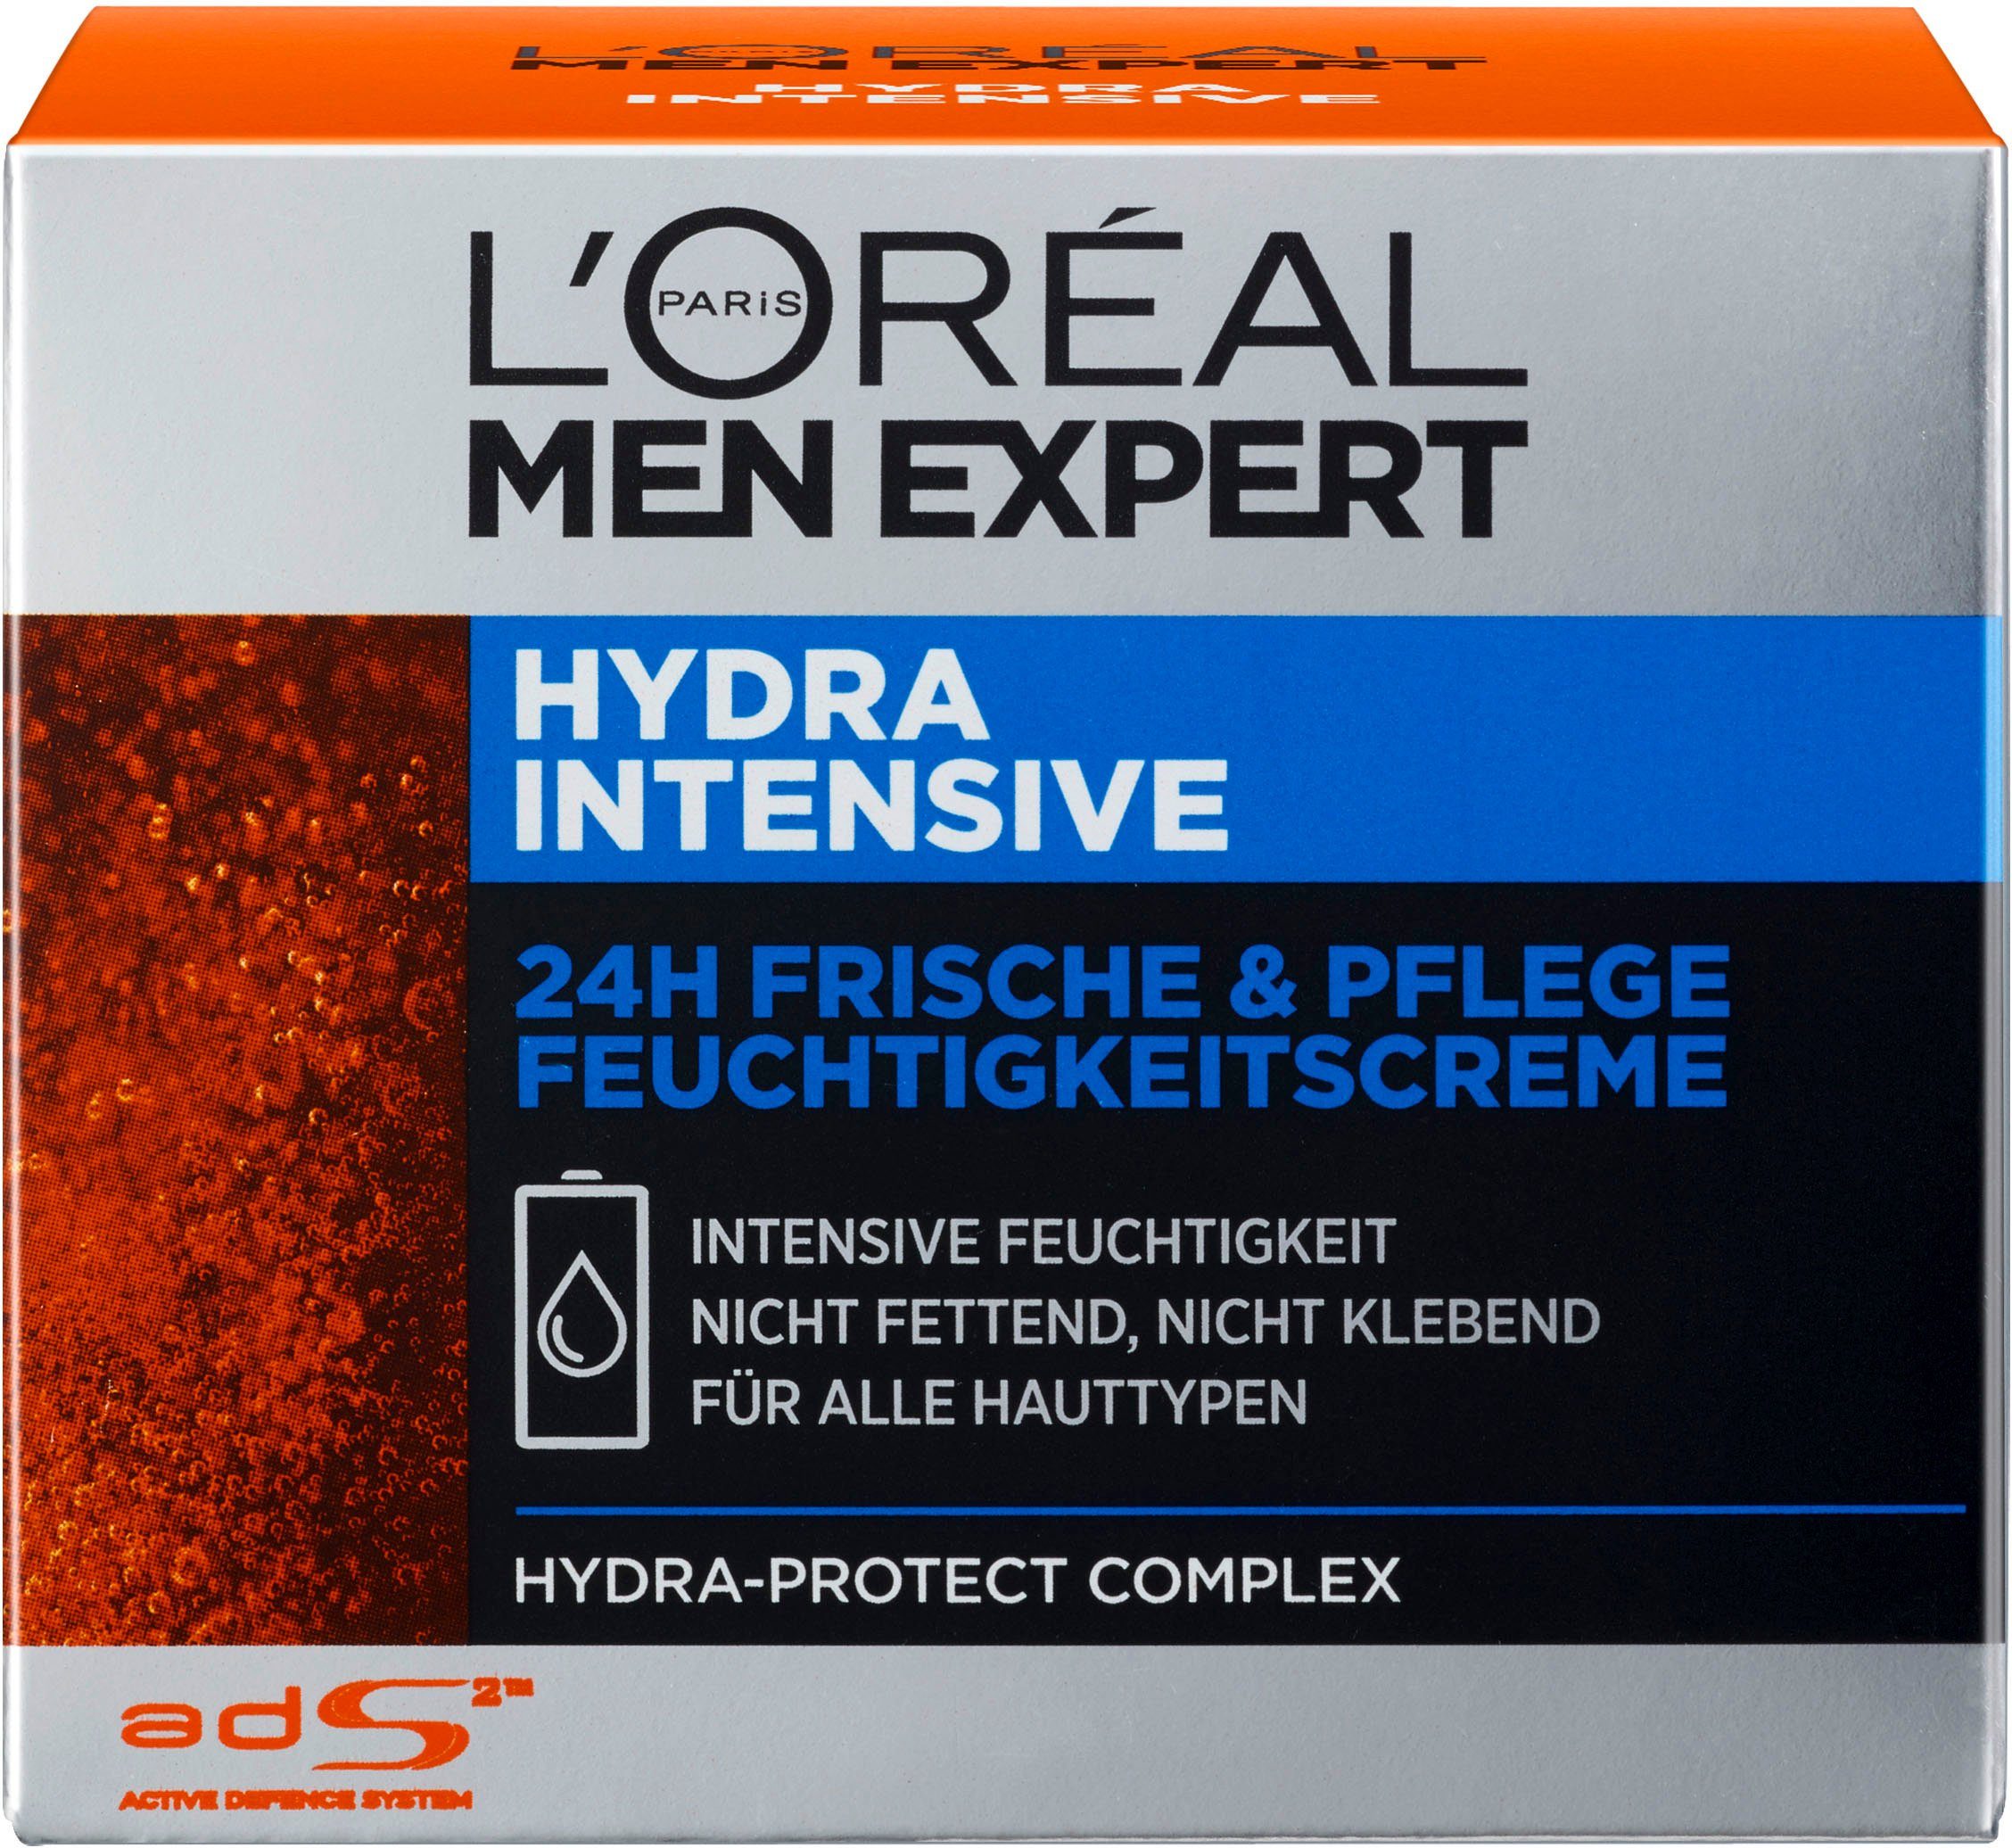 L'ORÉAL PARIS MEN EXPERT Feuchtigkeitscreme fetten zieht für sensible ein schnell, ohne Intensive, Männerhaut; Hydra